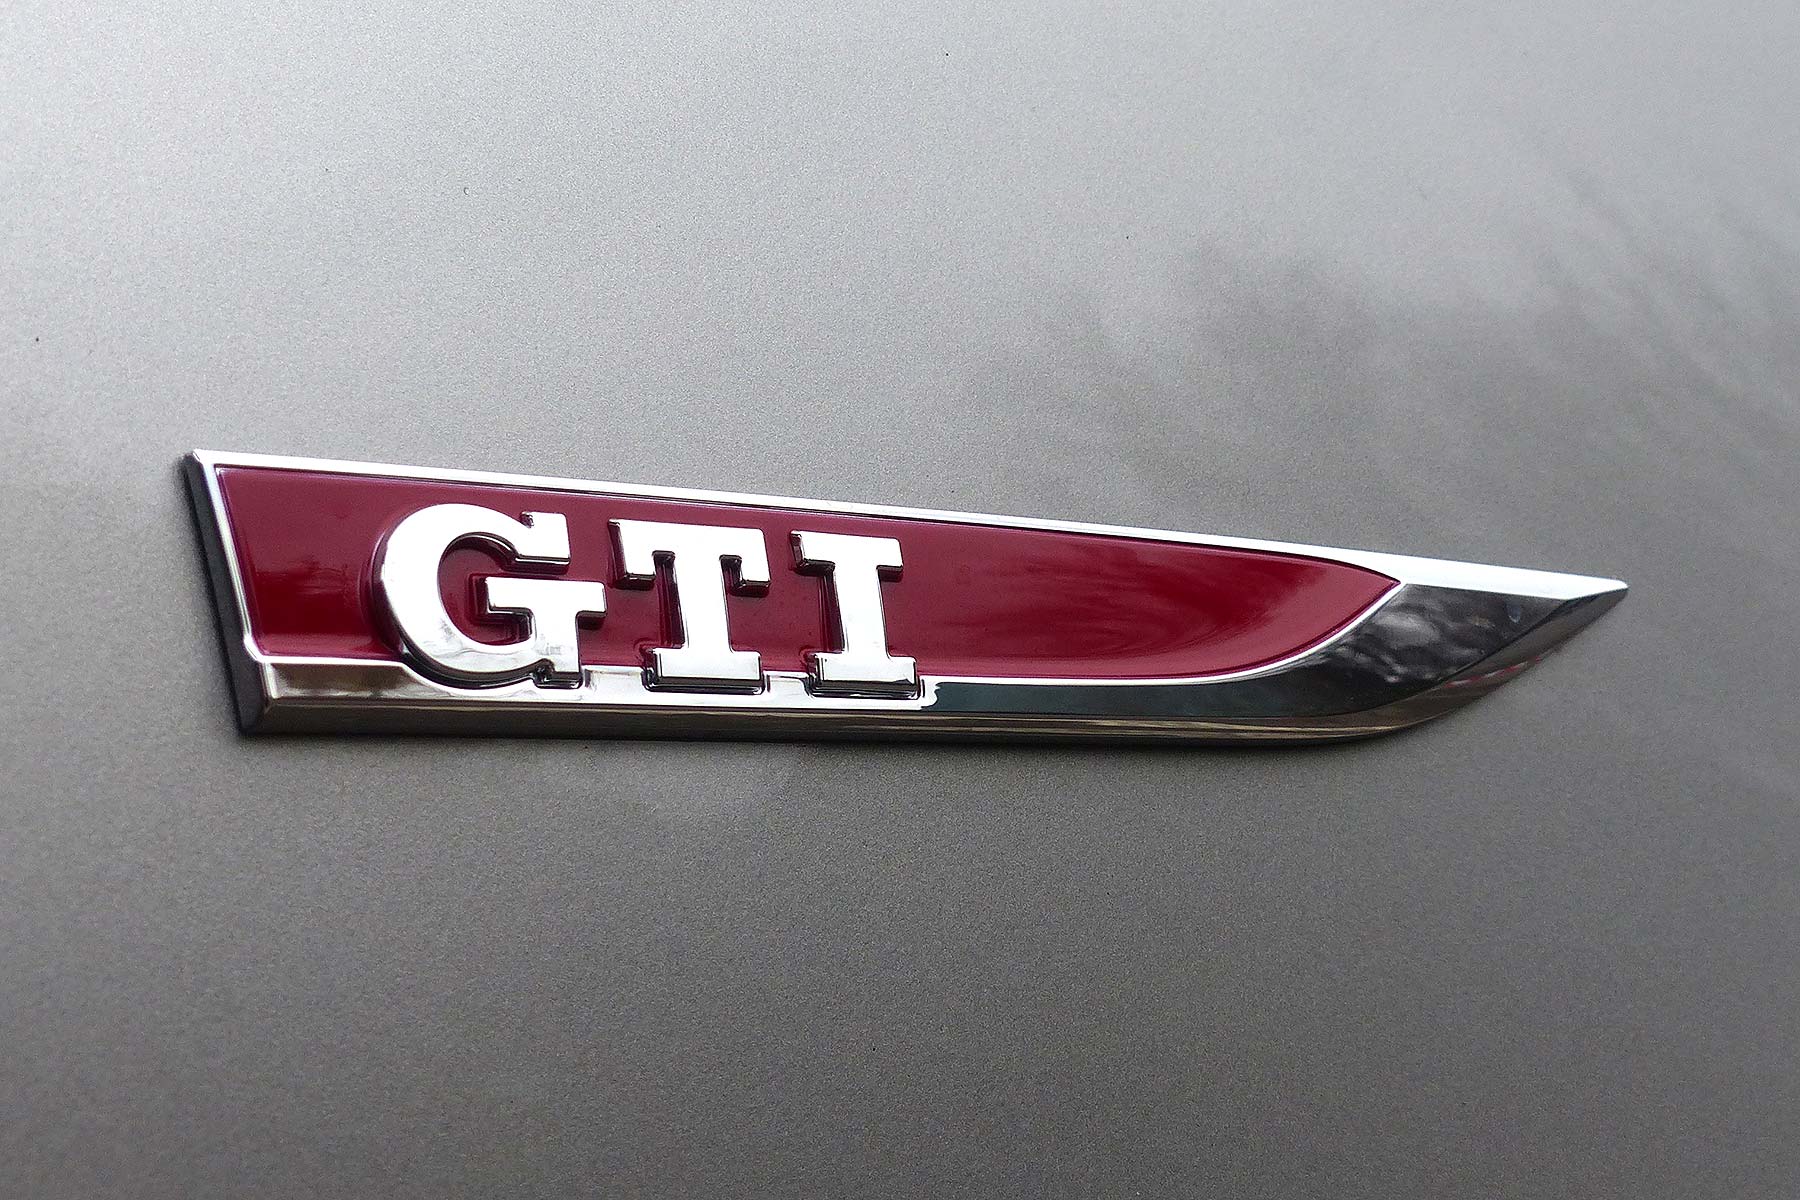 Volkswagen Lupo GTI vs. Polo GTI